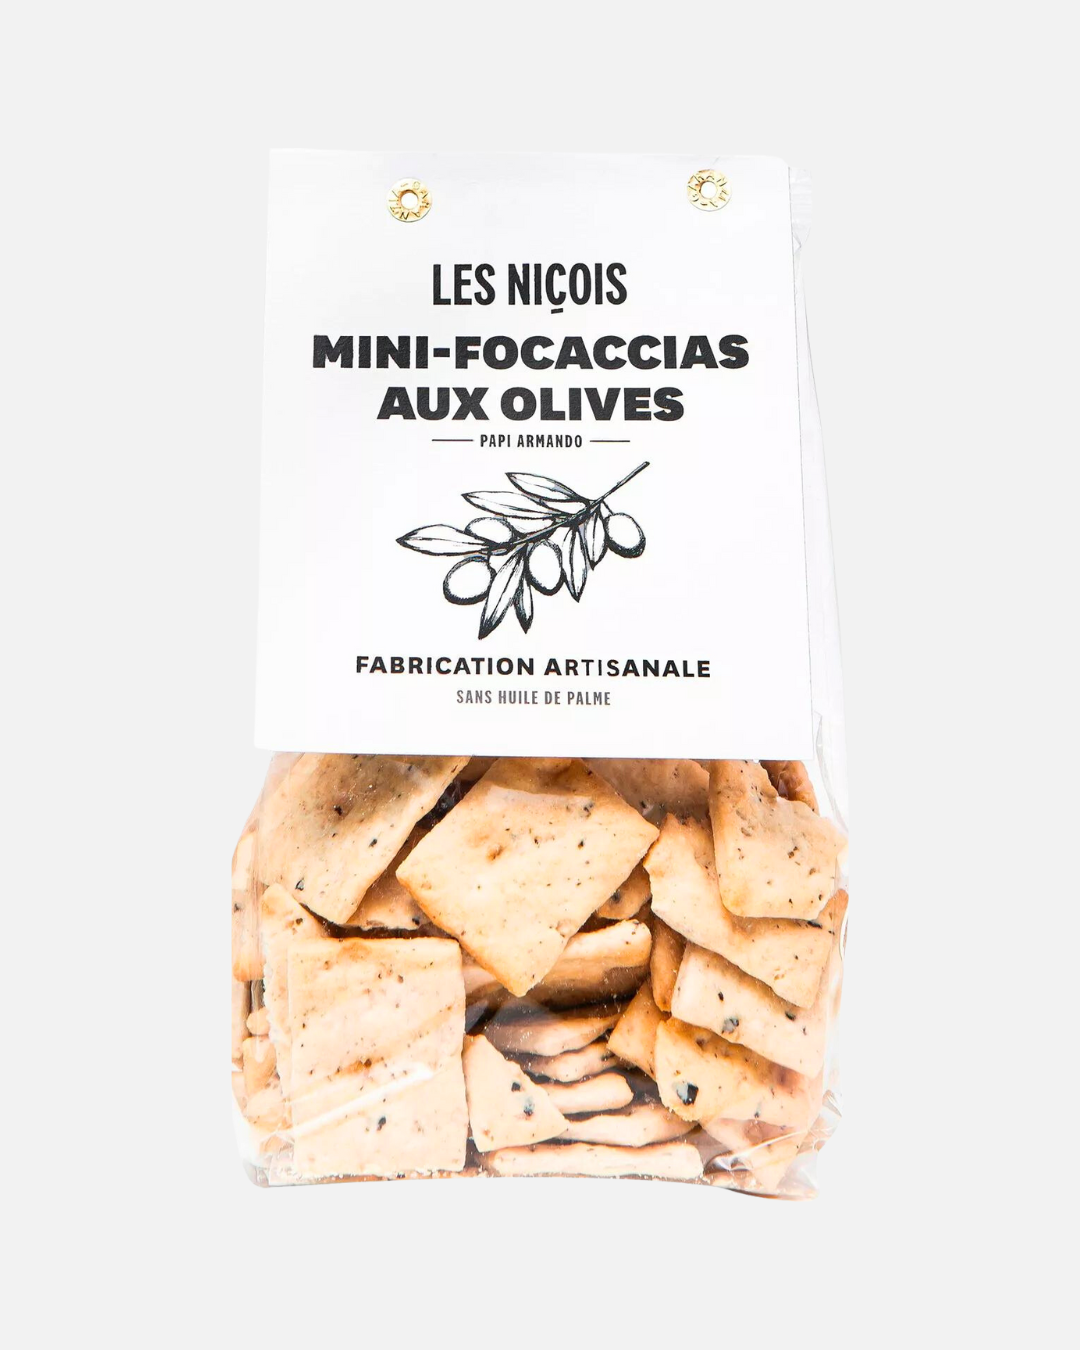 Mini Focaccias with Olives from Papi Armando, 200g